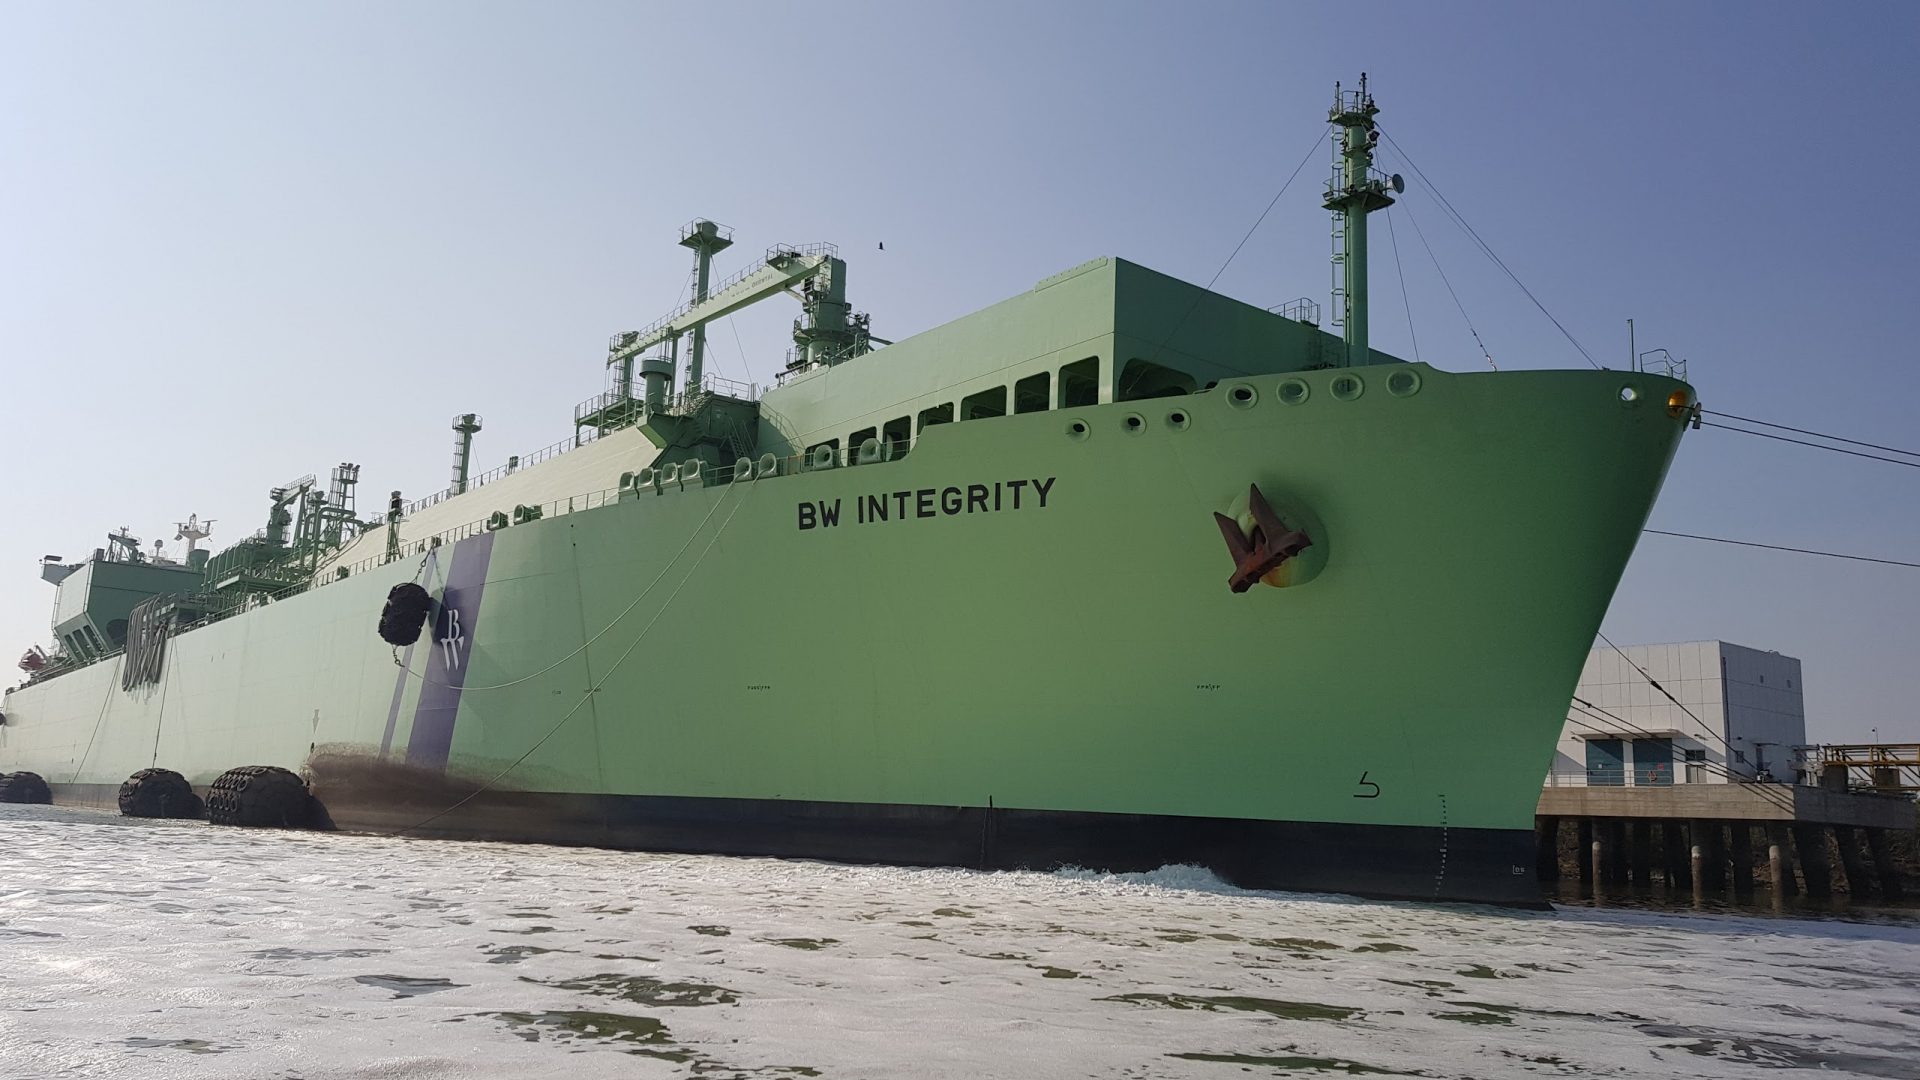 Qatar Petroleum's trading unit makes lowest bid in Pakistan LNG tender